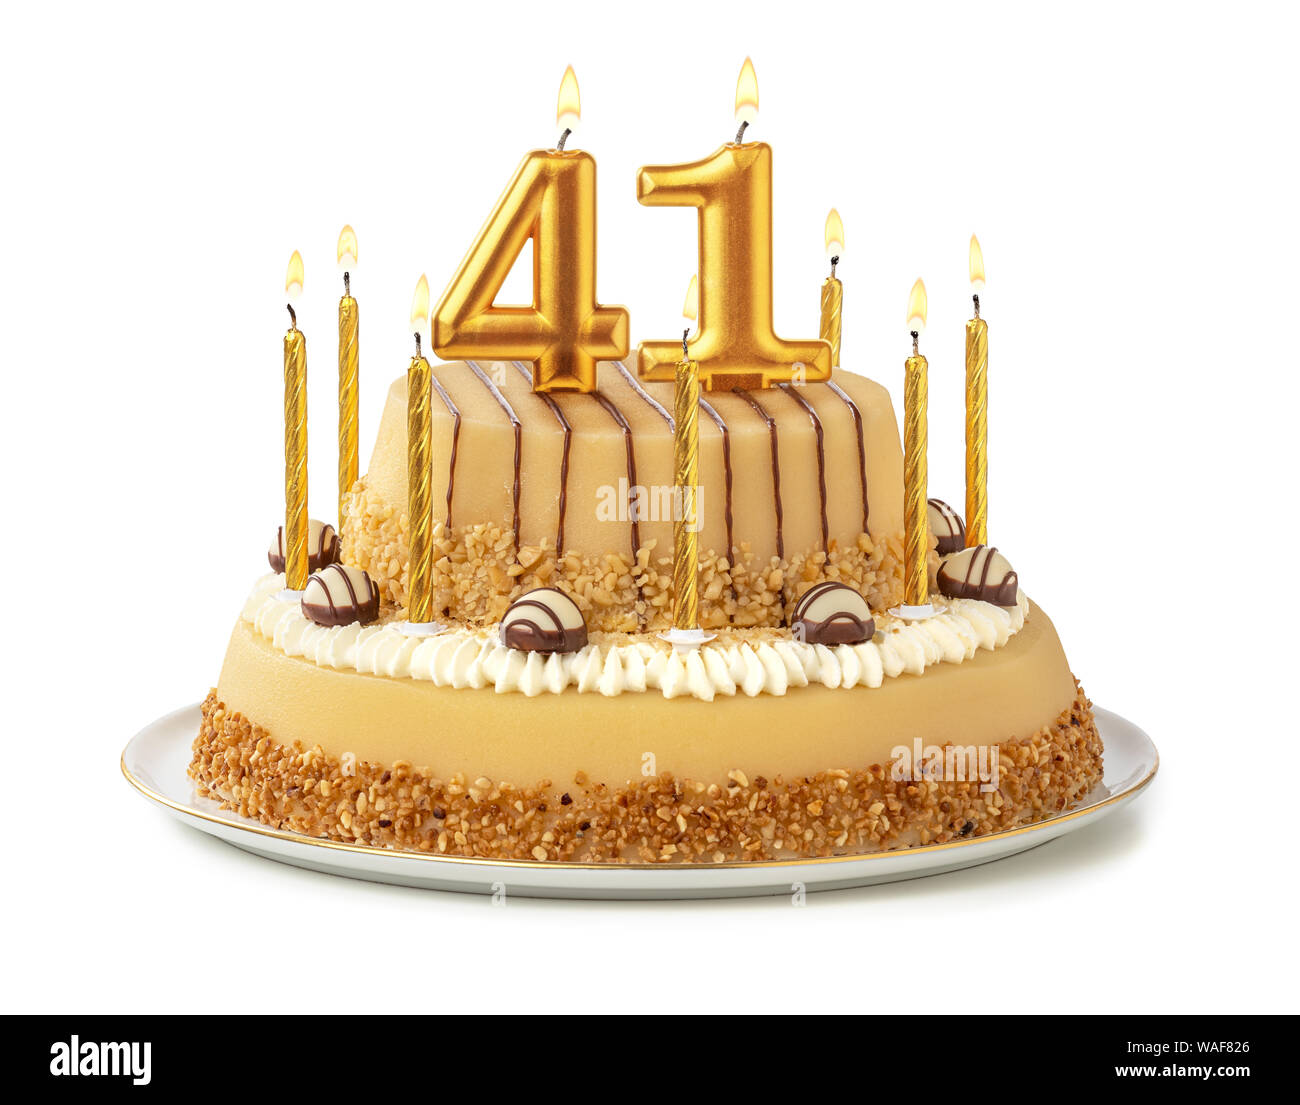 Gâteau de fête avec des bougies d'or - Numéro 41 Photo Stock - Alamy